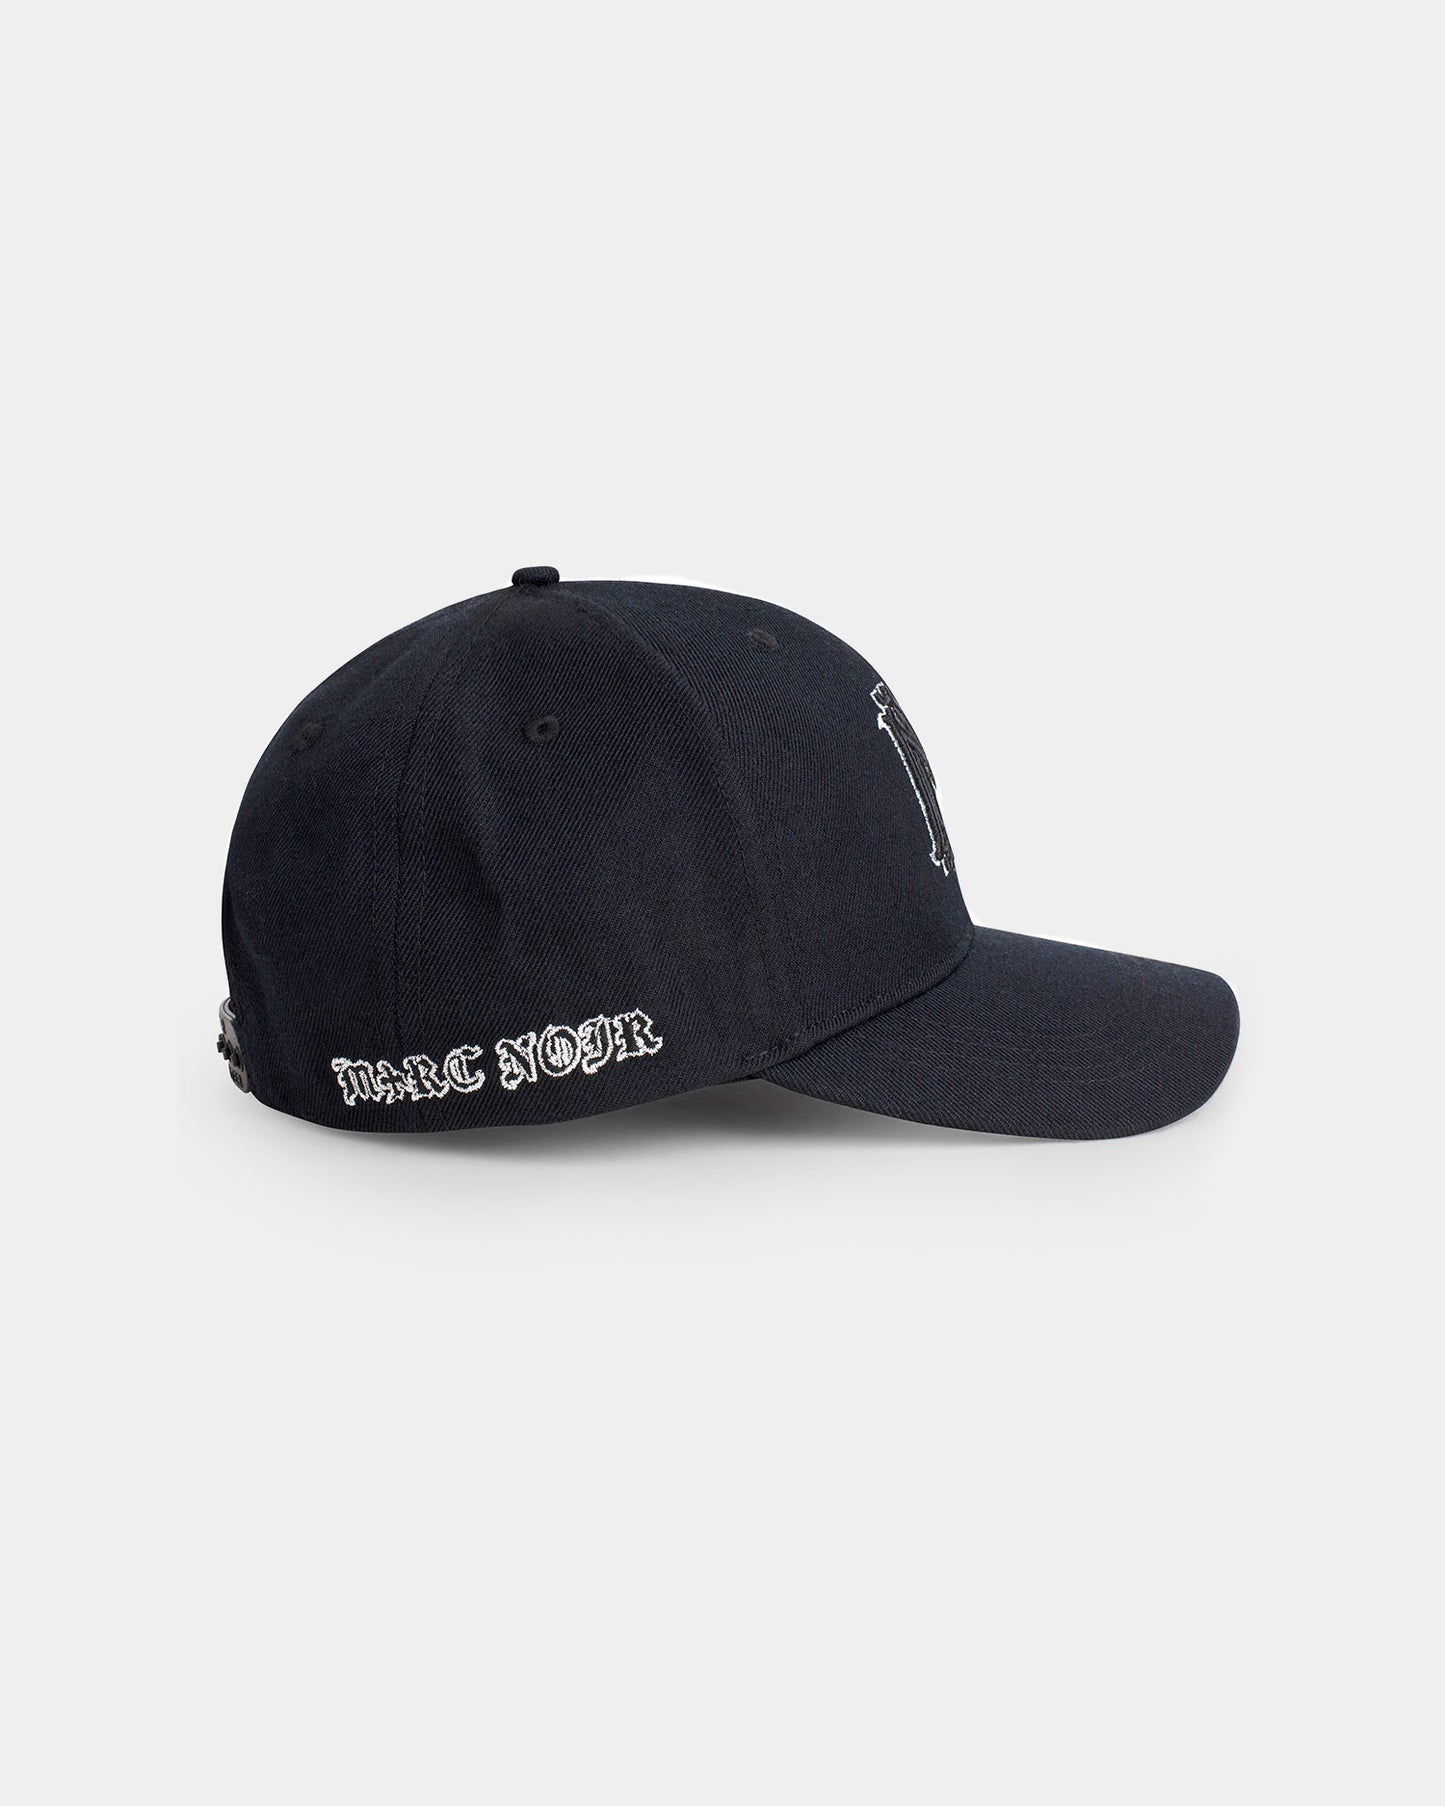 Classic pure wool twill black blazon hat logo